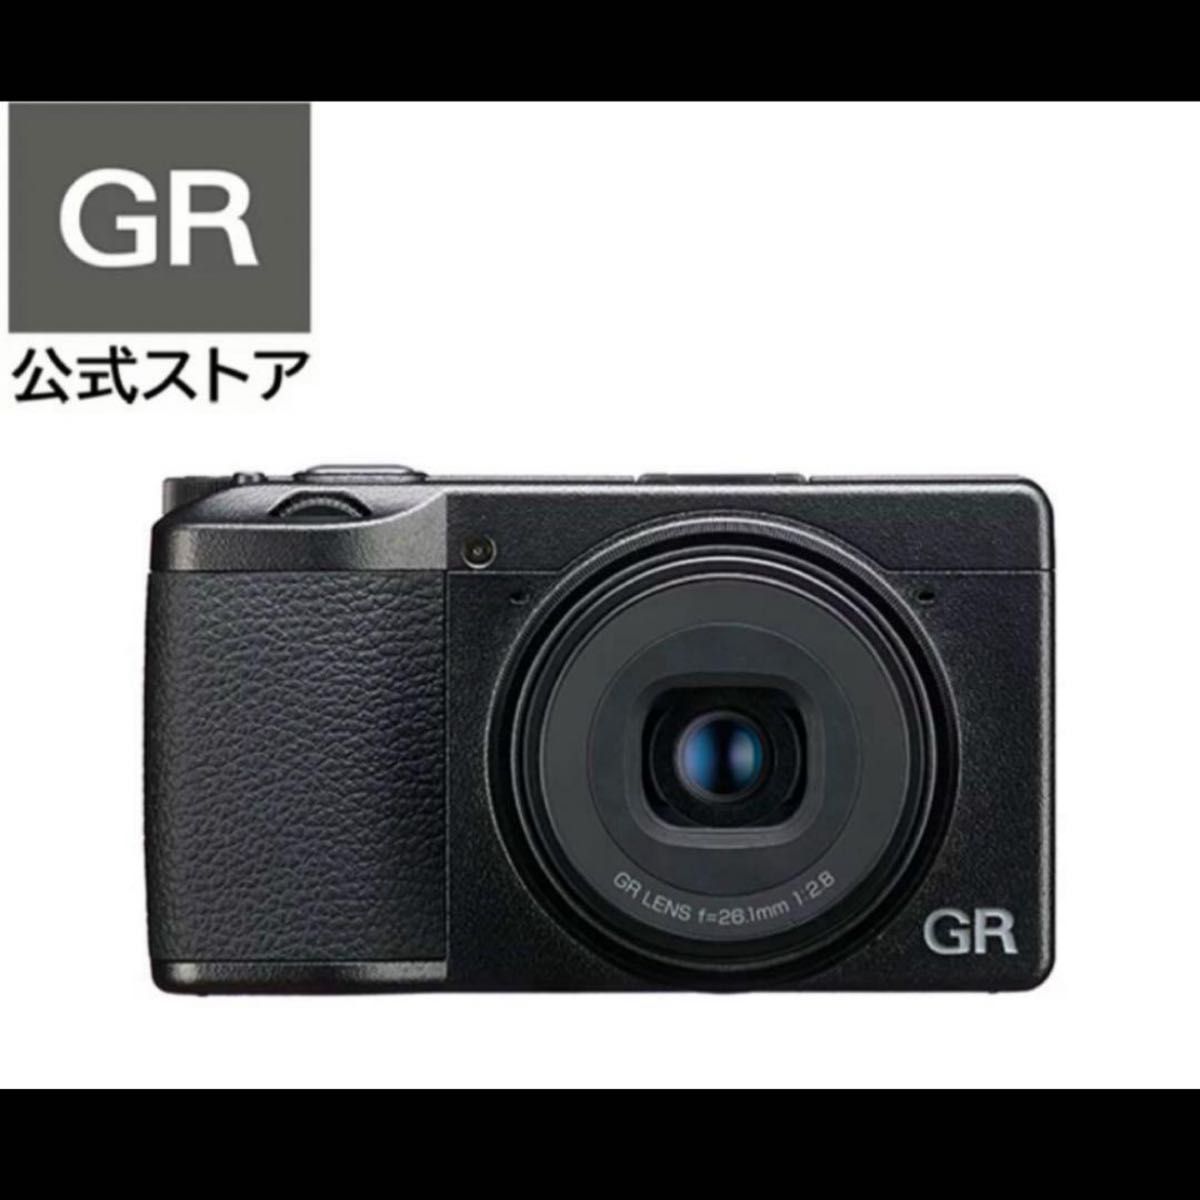 新品未使用品 RICOH GR IIIx HDF 特別モデル デジタルカメラ